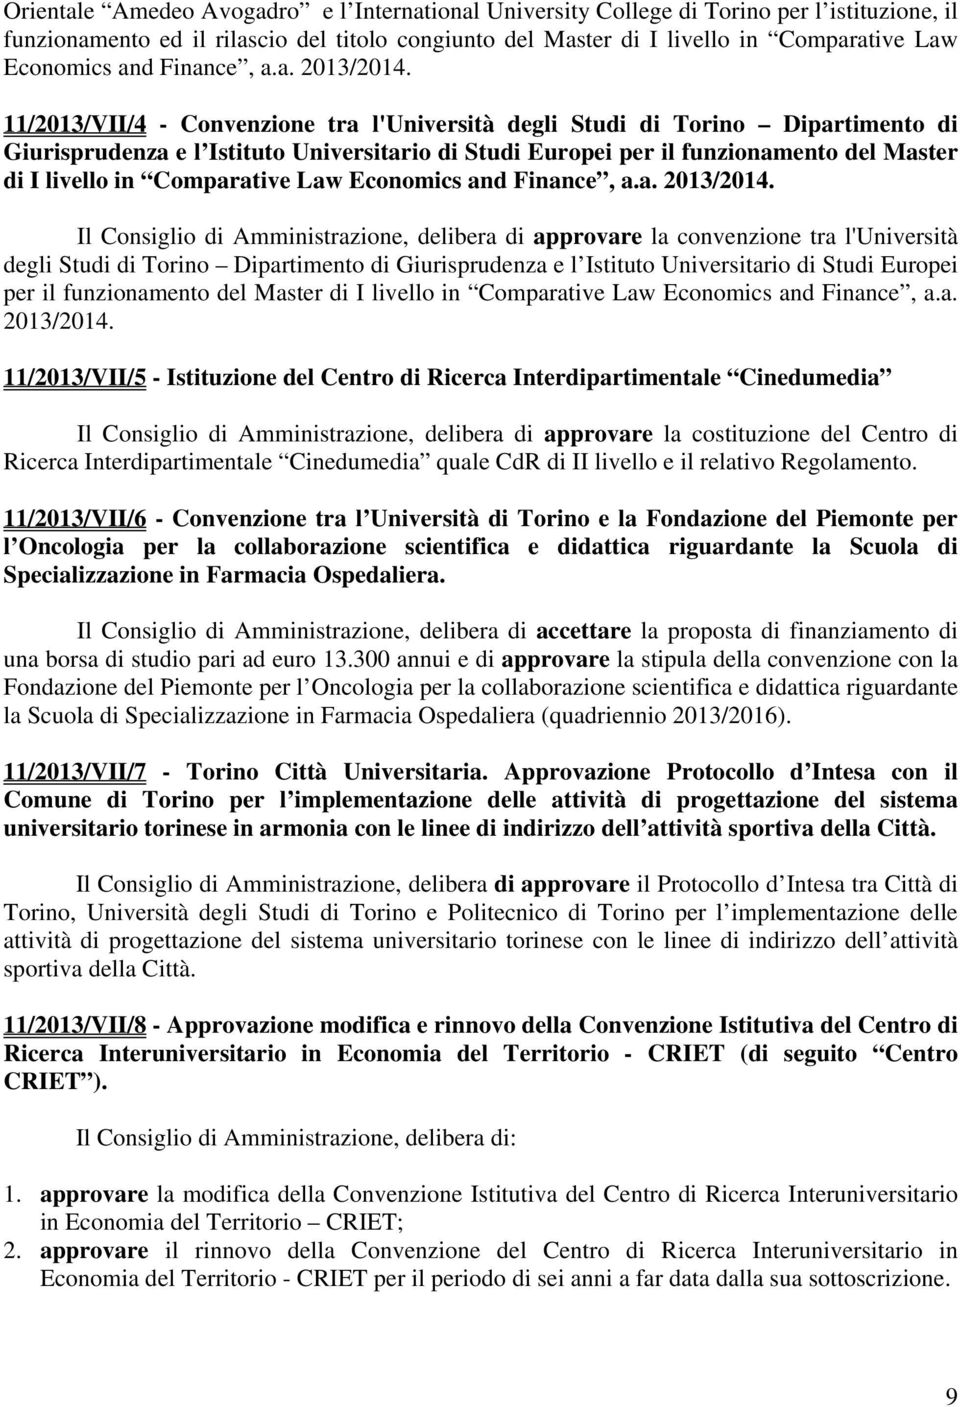 11/2013/VII/4 - Convenzione tra l'università degli Studi di Torino Dipartimento di Giurisprudenza e l Istituto Universitario di Studi Europei per il funzionamento del Master di I livello in